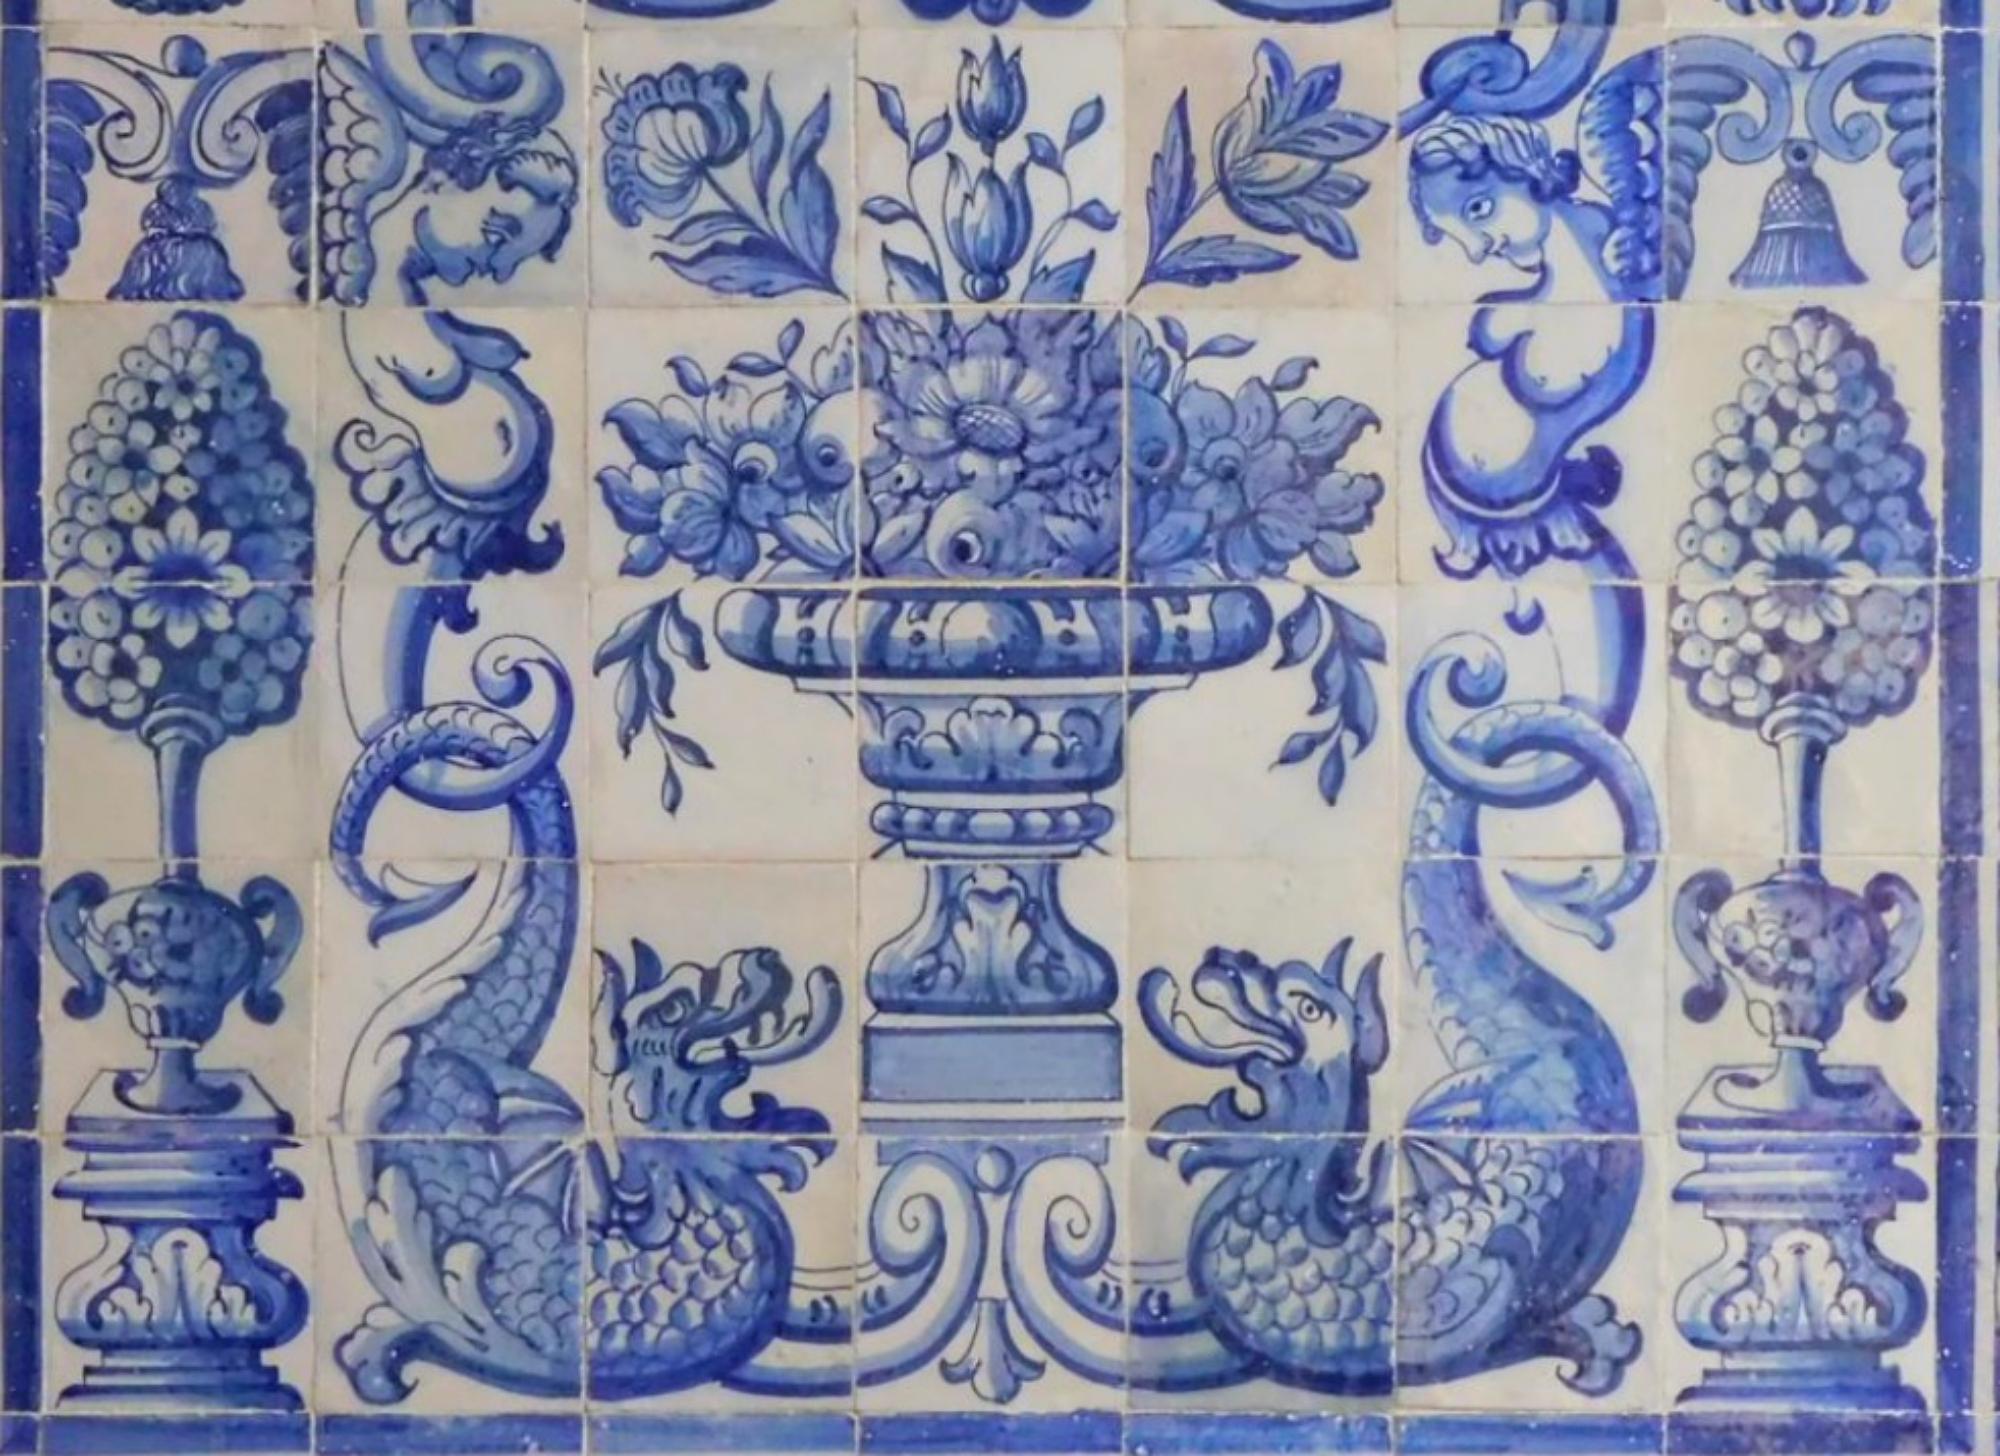 Vase portugais du 18e siècle 
Mesures : 154cm x 140cm
110 carreaux

Note importante : Ce panneau est avec les tuiles restaurées du 17ème siècle.
Le panneau est livré comme s'il s'agissait d'un tableau avec un squelette en bois afin que les